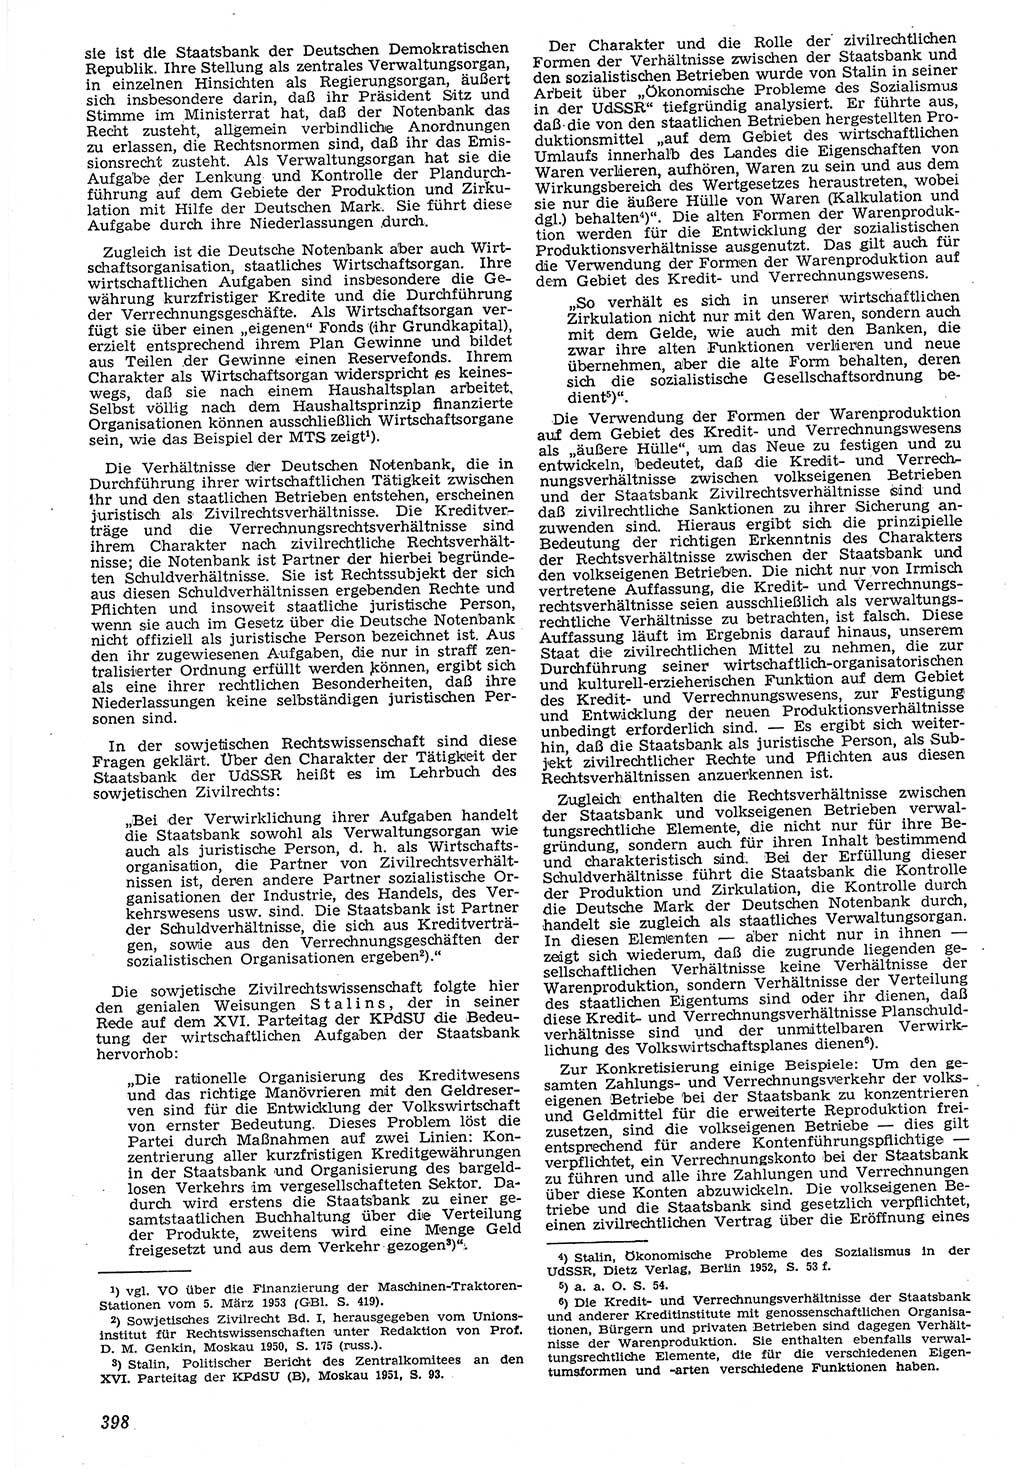 Neue Justiz (NJ), Zeitschrift für Recht und Rechtswissenschaft [Deutsche Demokratische Republik (DDR)], 7. Jahrgang 1953, Seite 398 (NJ DDR 1953, S. 398)